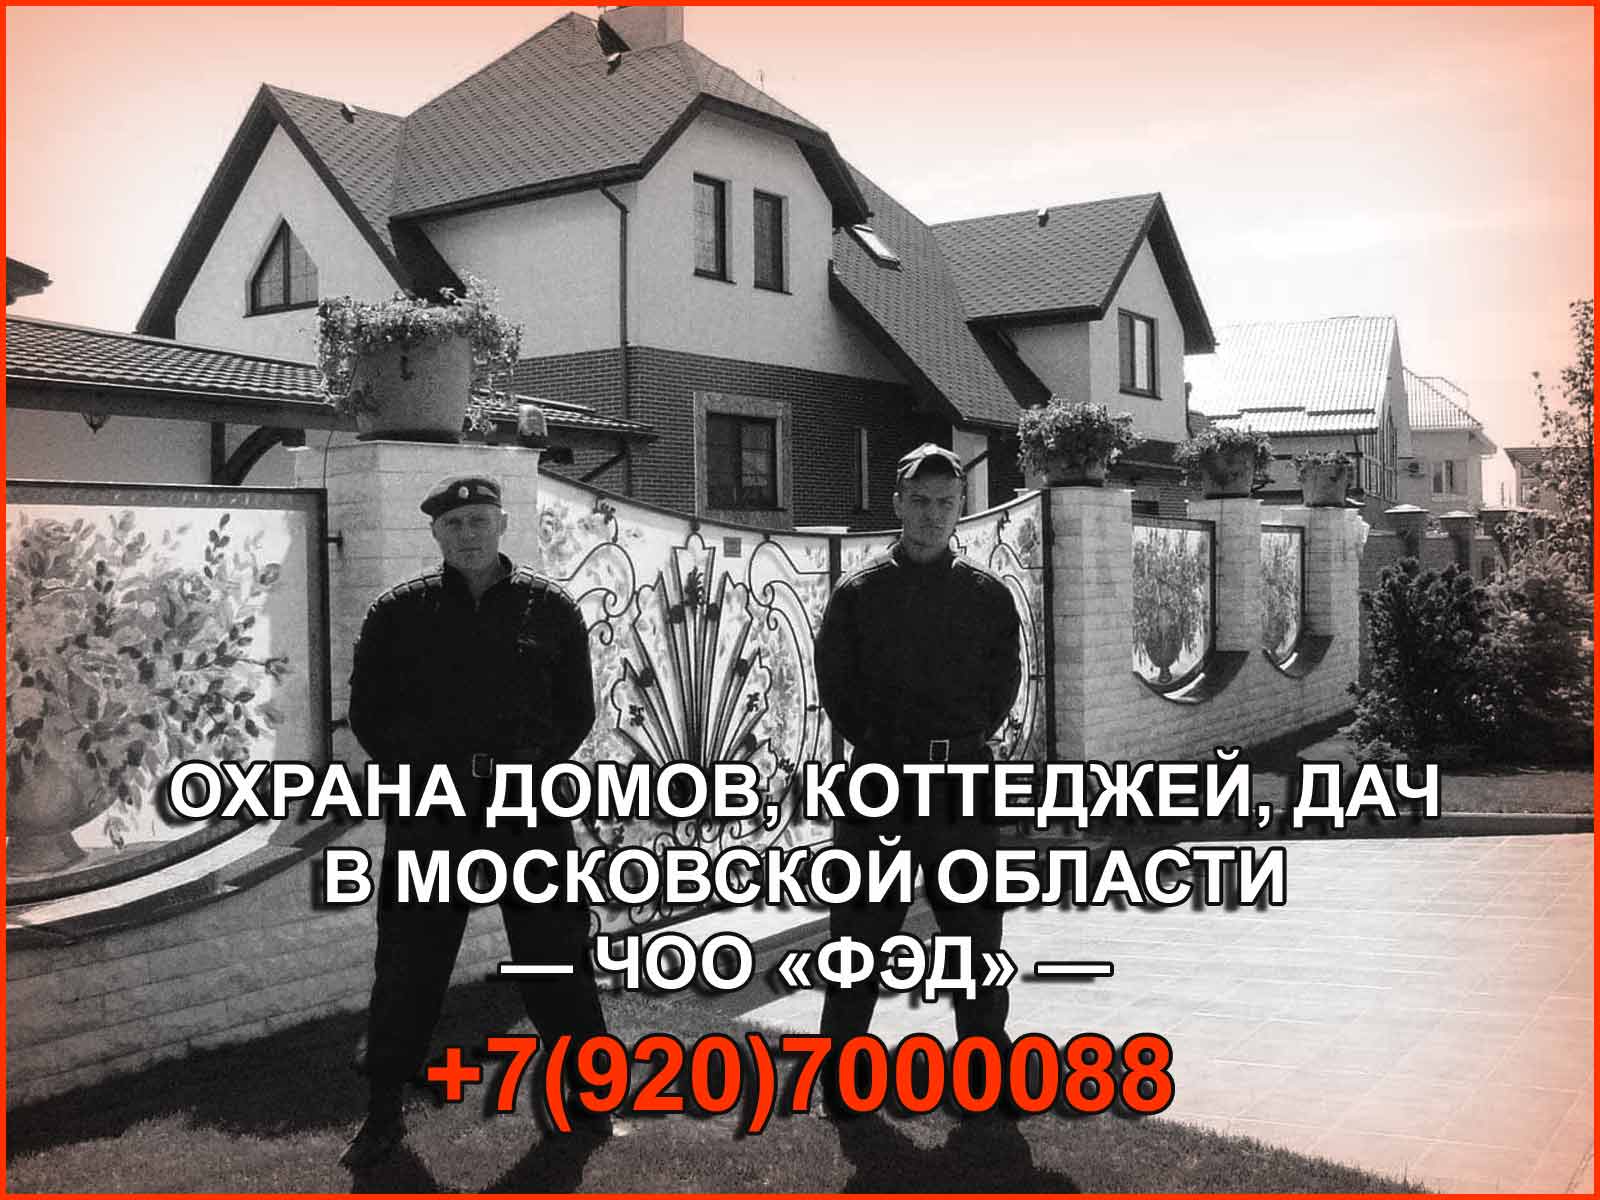 ЧОО "ФЭД" предоставляет профессиональные услуги охраны коттеджей, дач и домов в Московской области, обеспечивая полную защиту и спокойствие для вас и вашей семьи